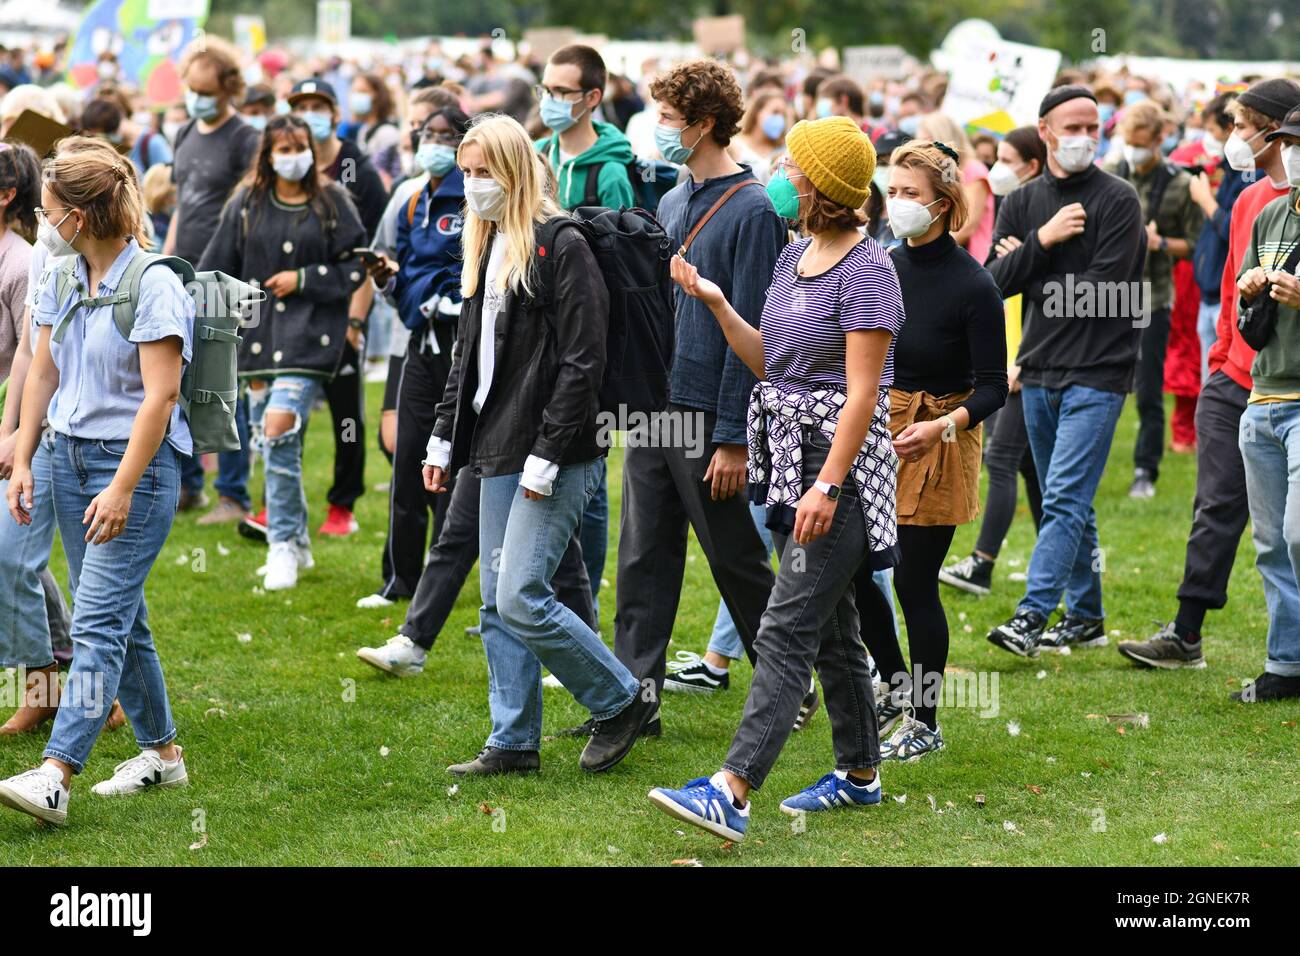 Heidelberg, Allemagne - 24 septembre 2021 : des jeunes assistent à une manifestation de grève mondiale du climat avec des masques faciaux pendant la crise du virus Corona Banque D'Images